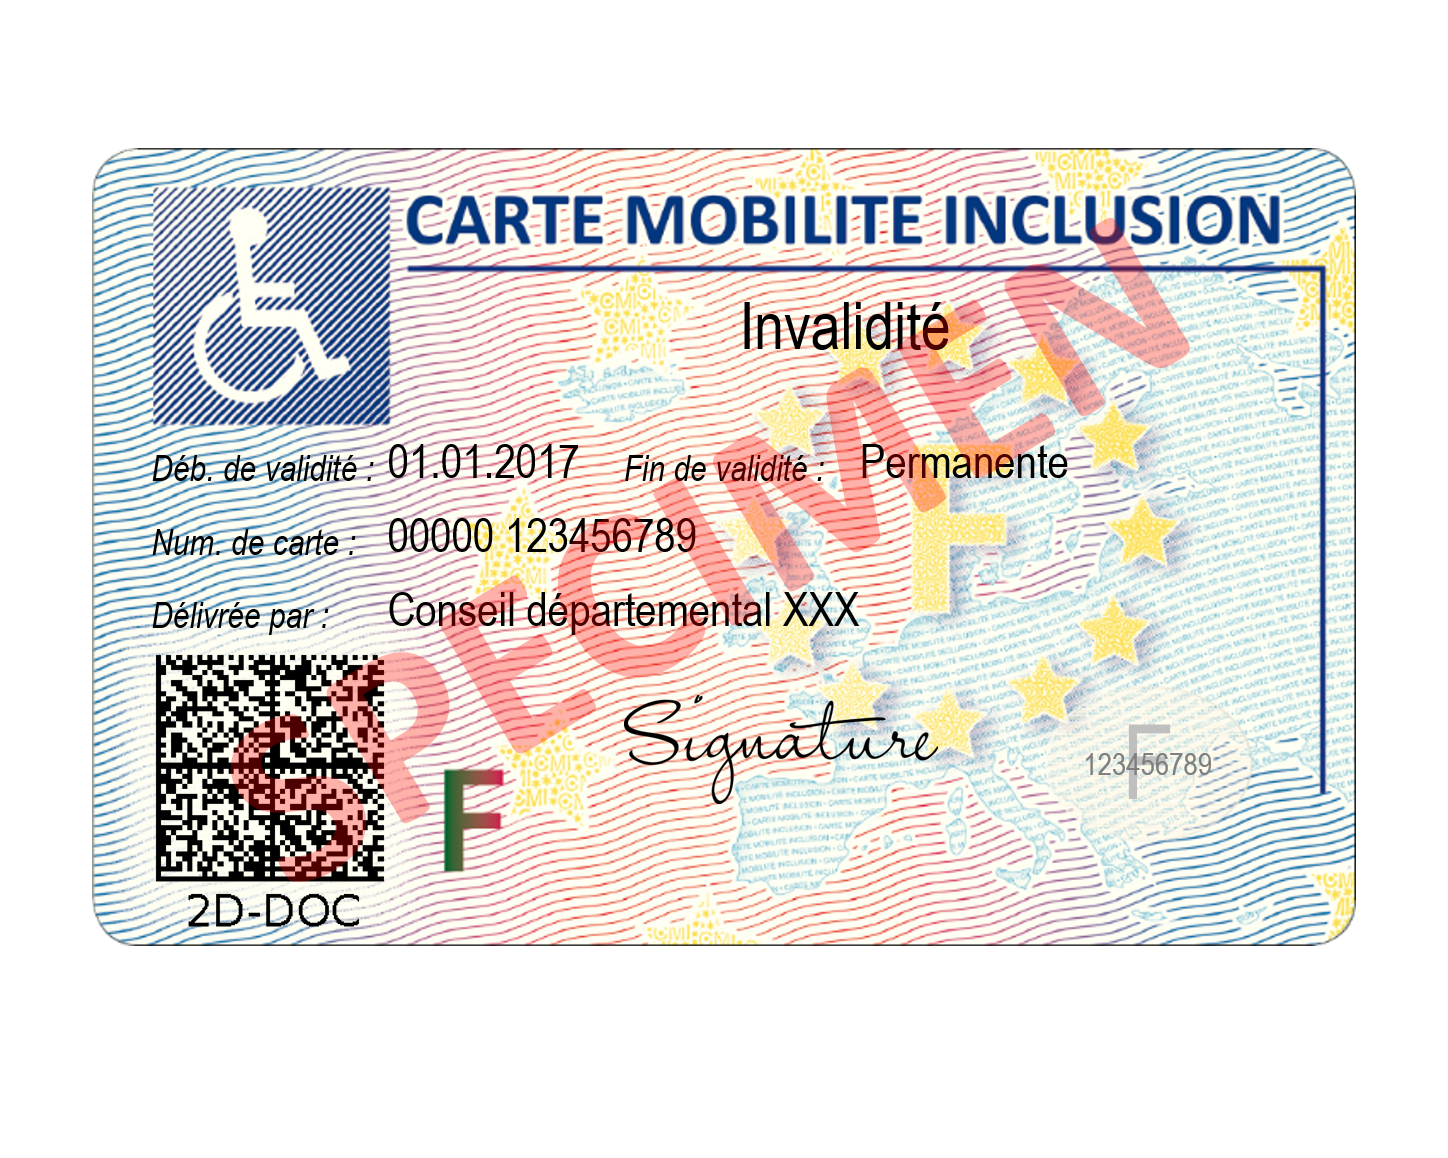 Visuel de la Carte Mobilité Inclusion (CMI) invalidité recto